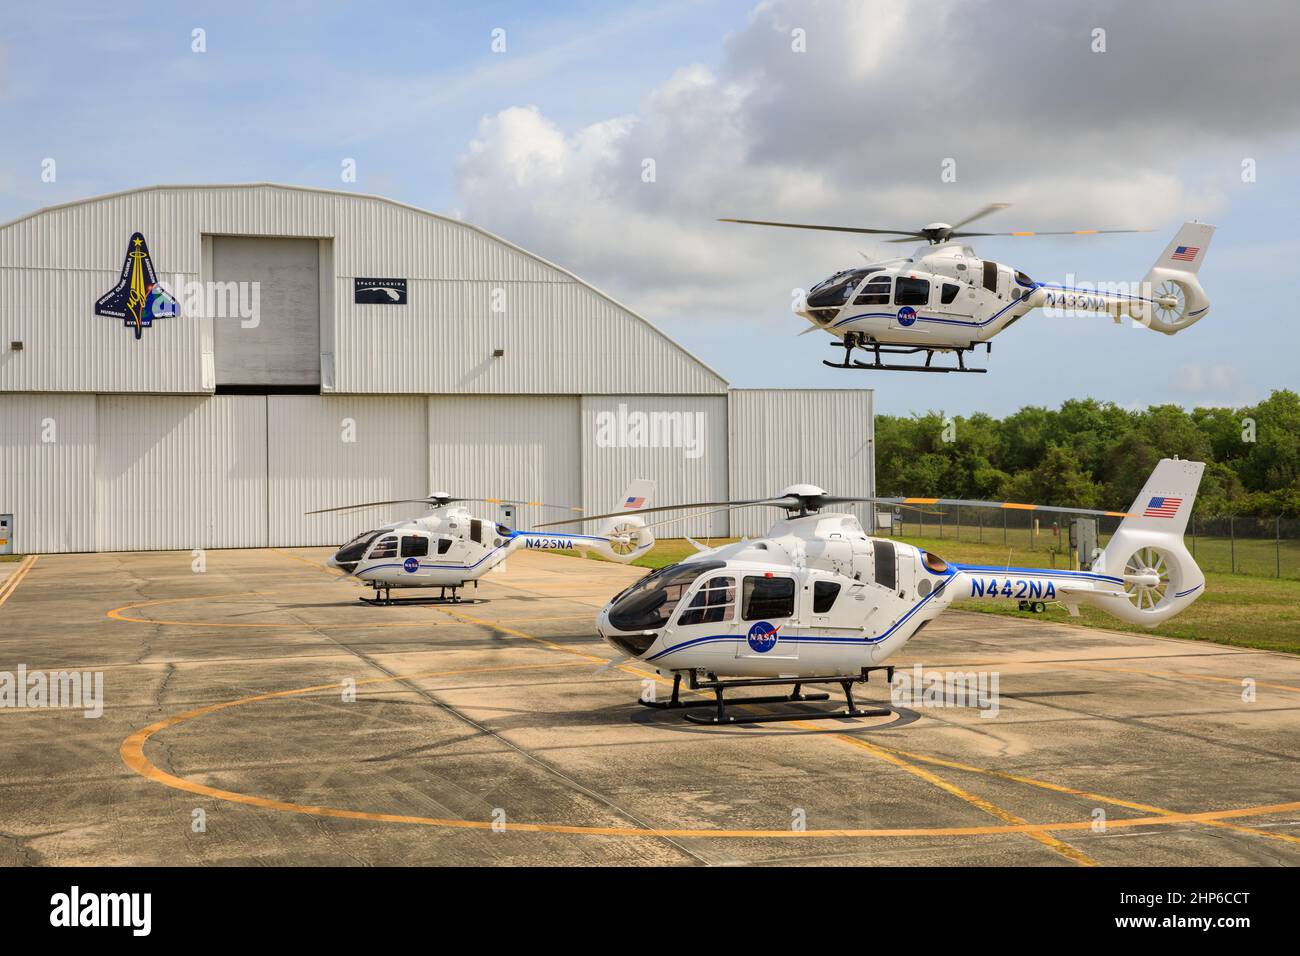 Le troisième et dernier hélicoptère Airbus H135 touche la piste de l’installation de lancement et d’atterrissage du Kennedy Space Center de la NASA en Floride le 26 mars 2021, complétant ainsi la flotte améliorée d’aéronefs utilisés pour les opérations de sécurité. Les hélicoptères Airbus H135 remplacent les appareils Bell Huey 2 qui étaient en service à Kennedy depuis 30 ans Banque D'Images